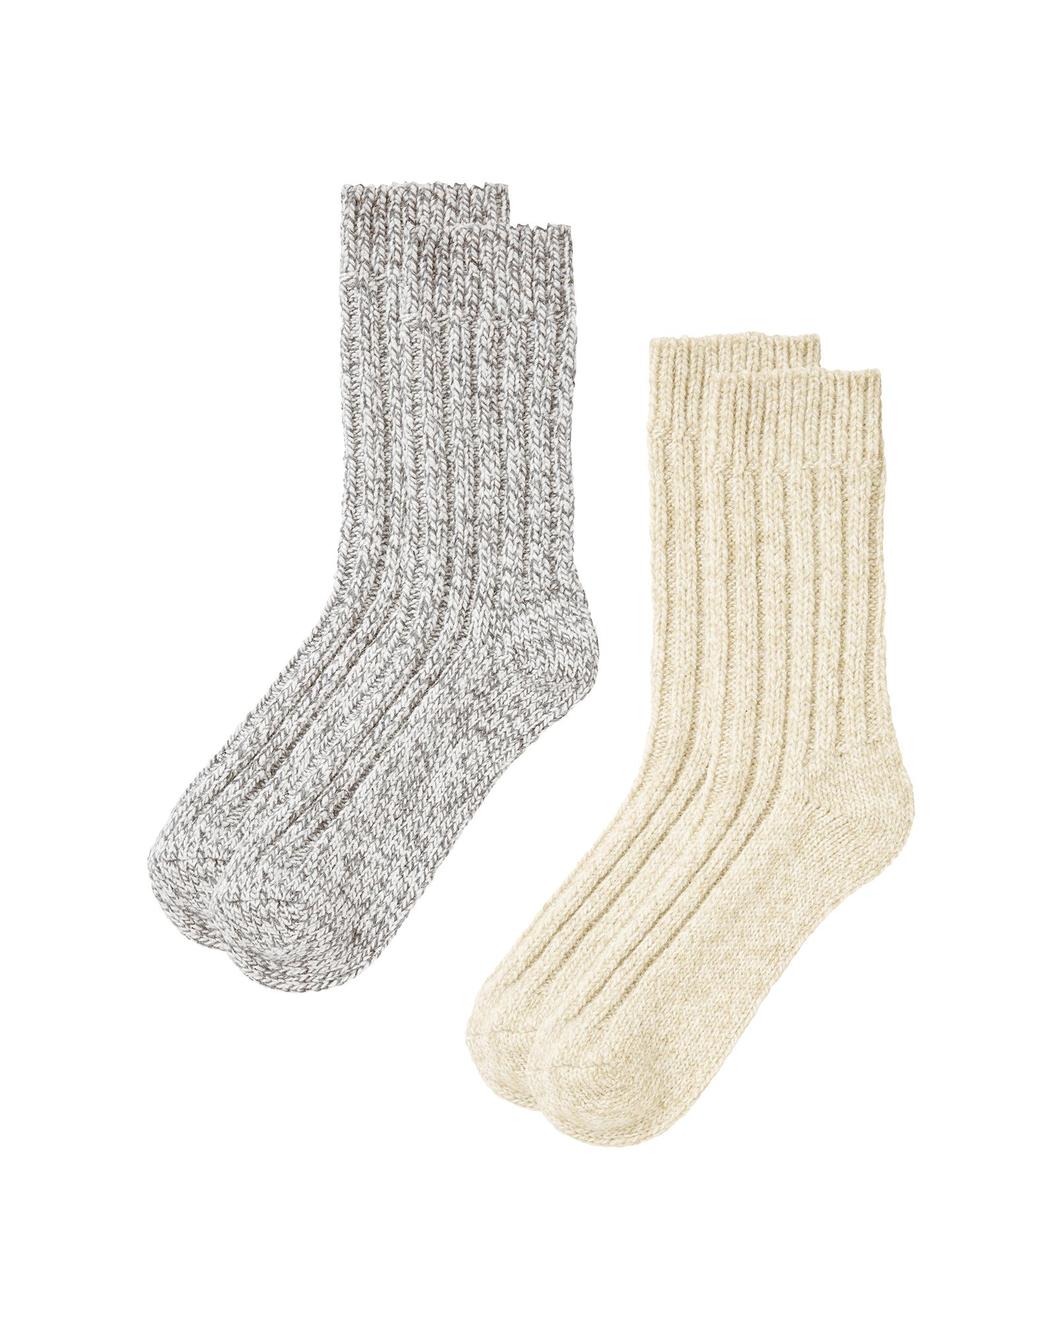 Rag Wool Socks för 120 kr på Newbody